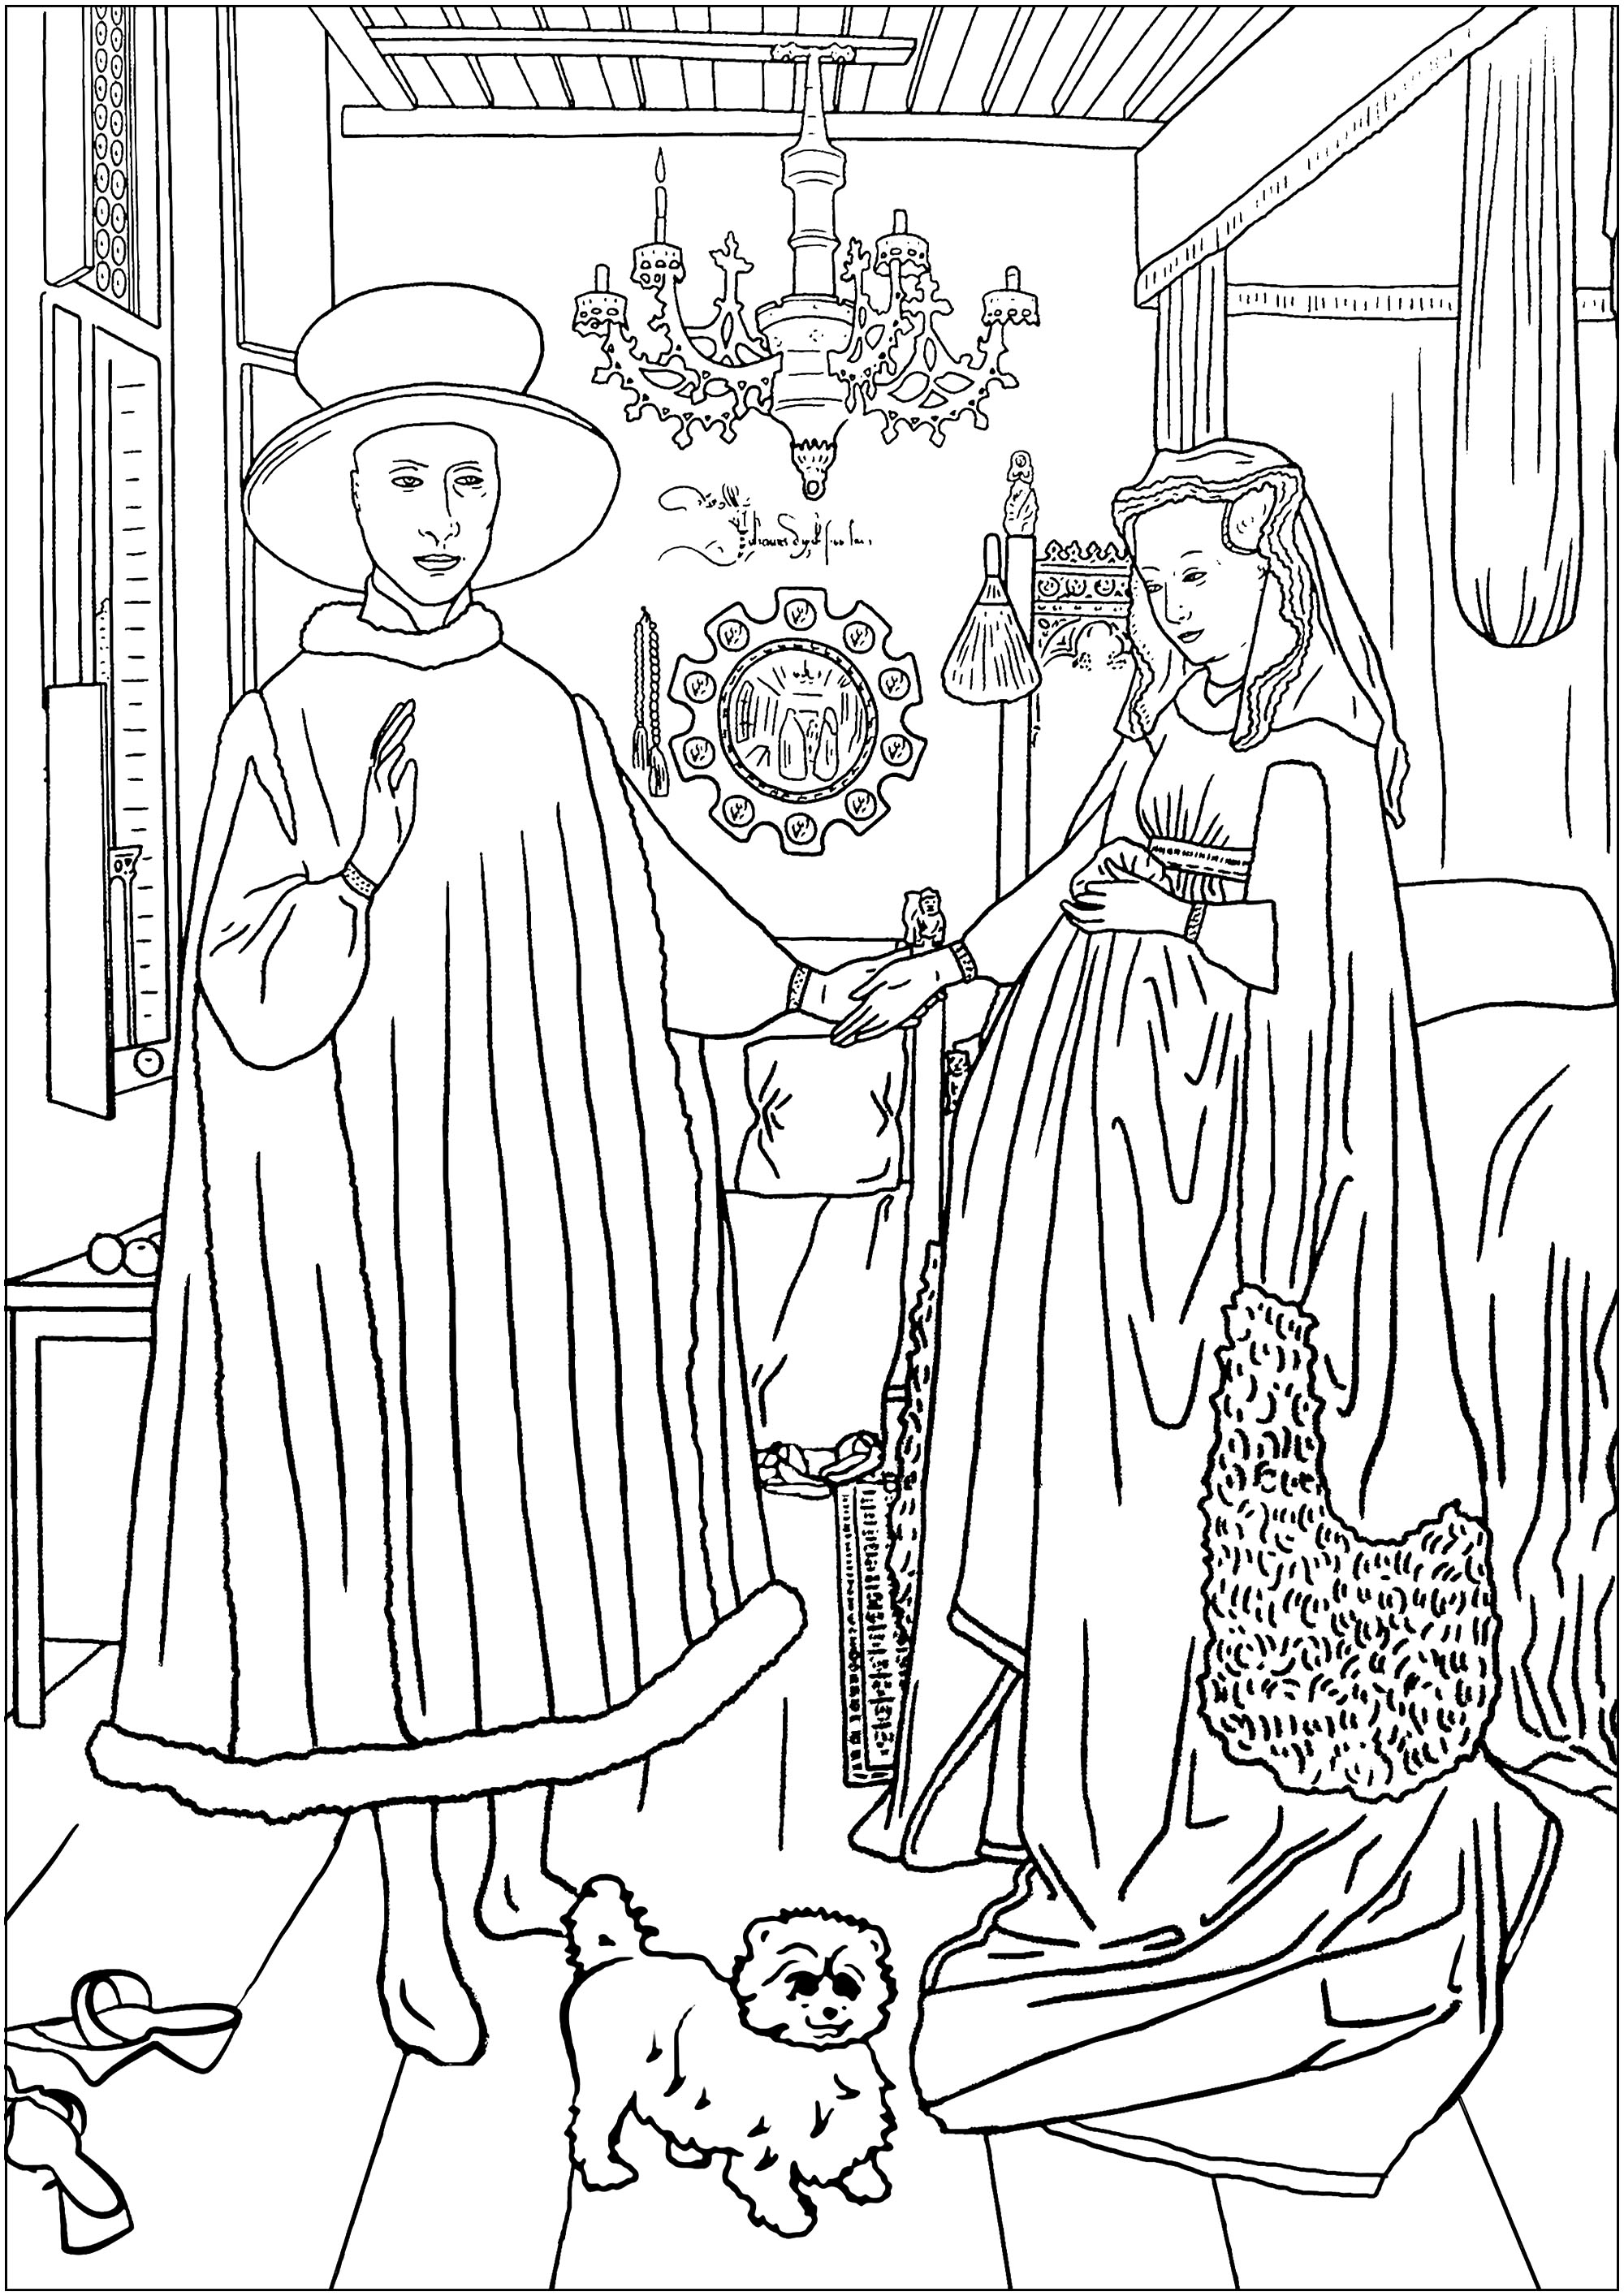 Página para colorir criada a partir de O retrato de Arnoflini de Jan Van Eyck